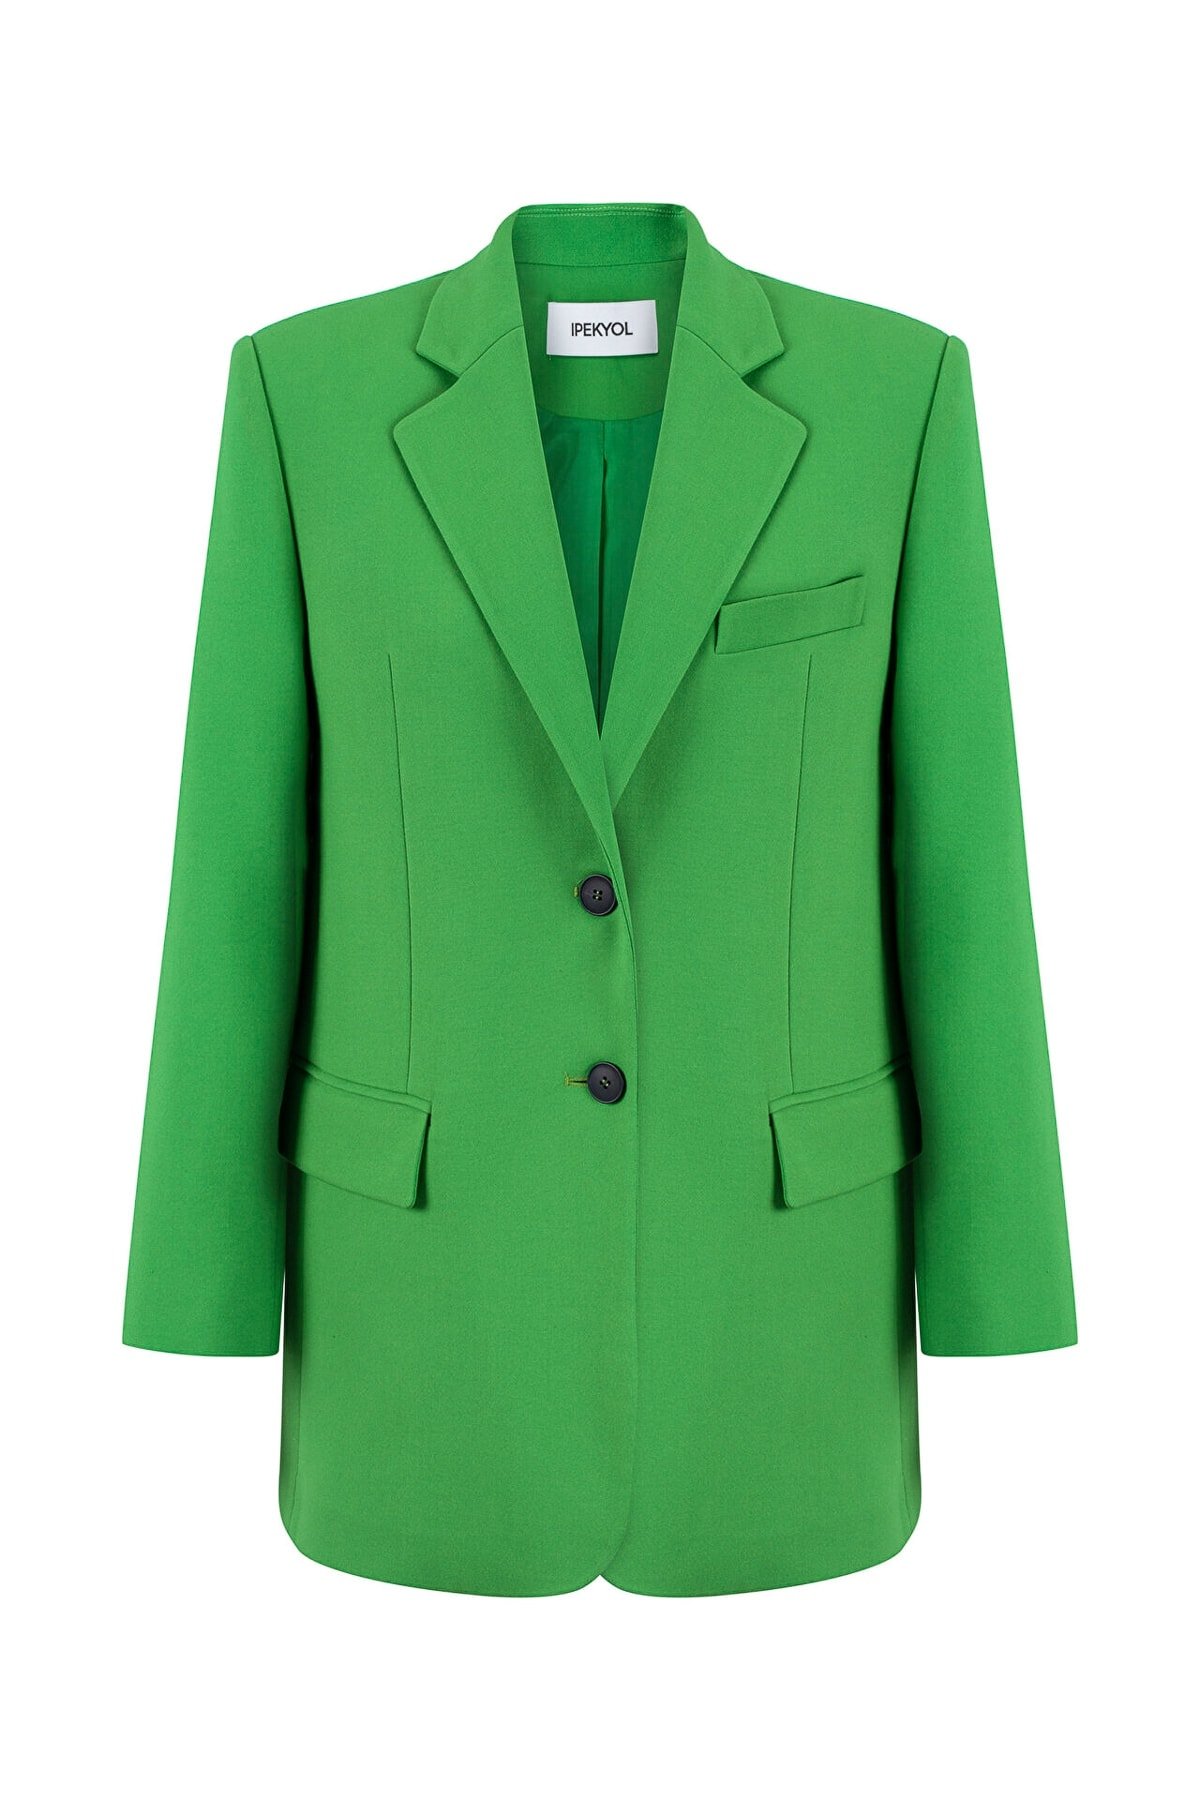 IPEKYOL Mono Yaka Yeşil Uzun Blazer Ceket